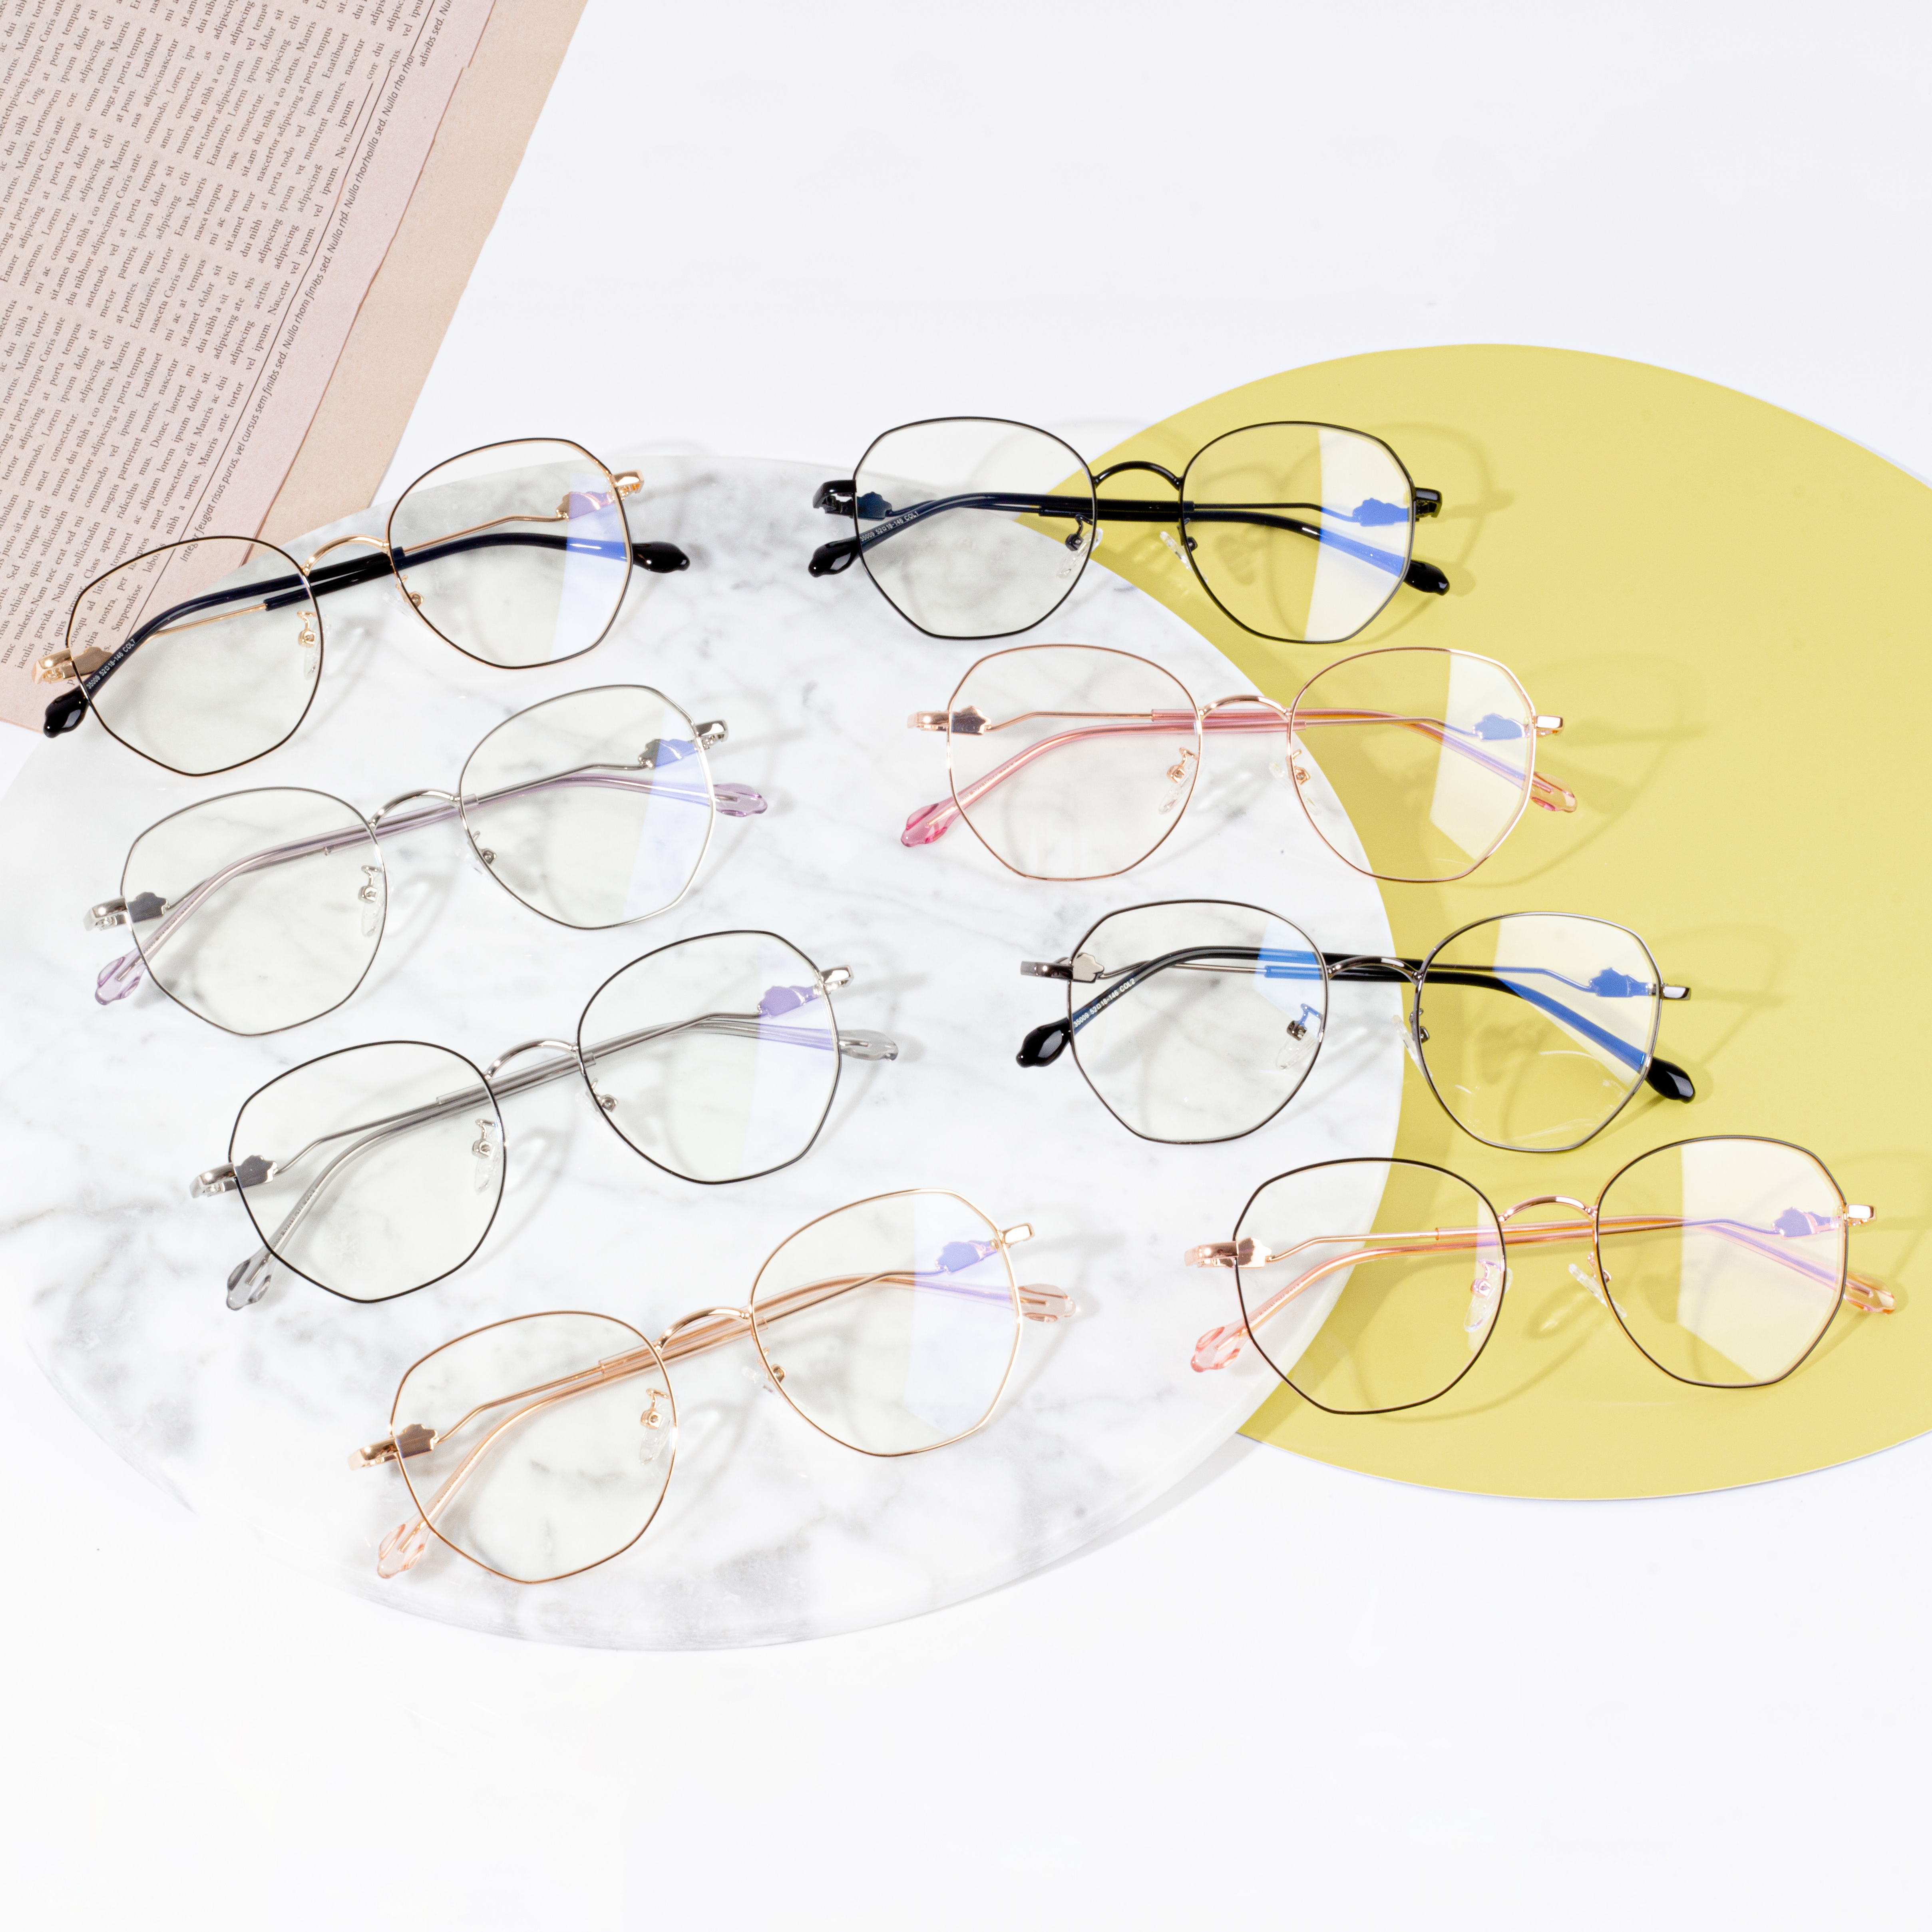 Kacamata premium frame kacamata optik ringan